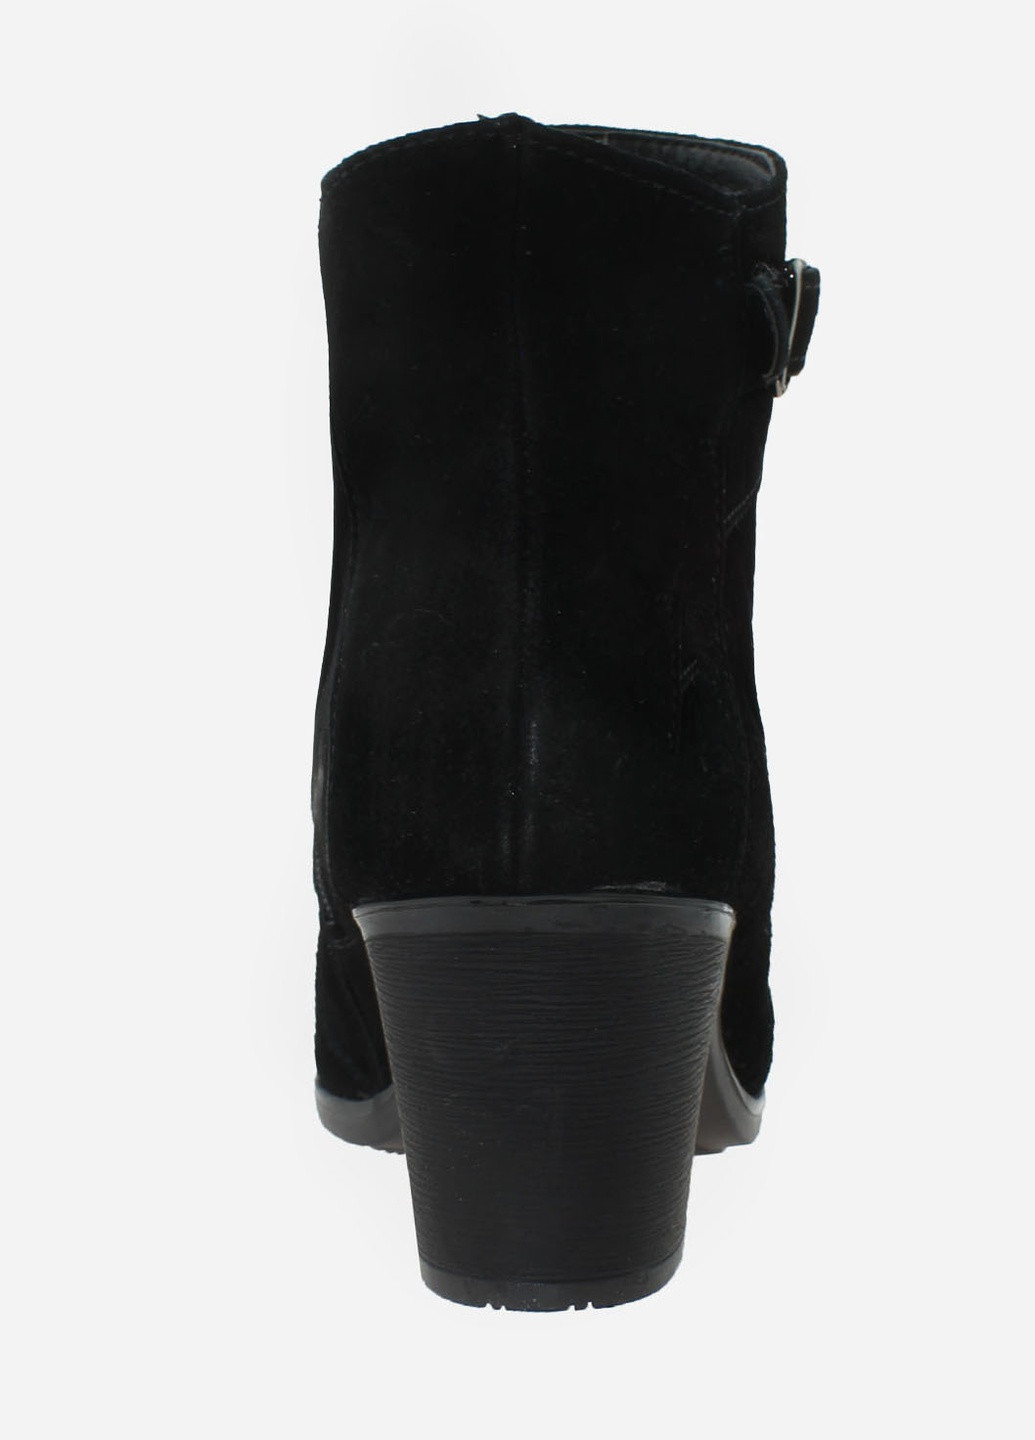 Зимние ботинки rg18-53076-11 черный Gampr из натуральной замши